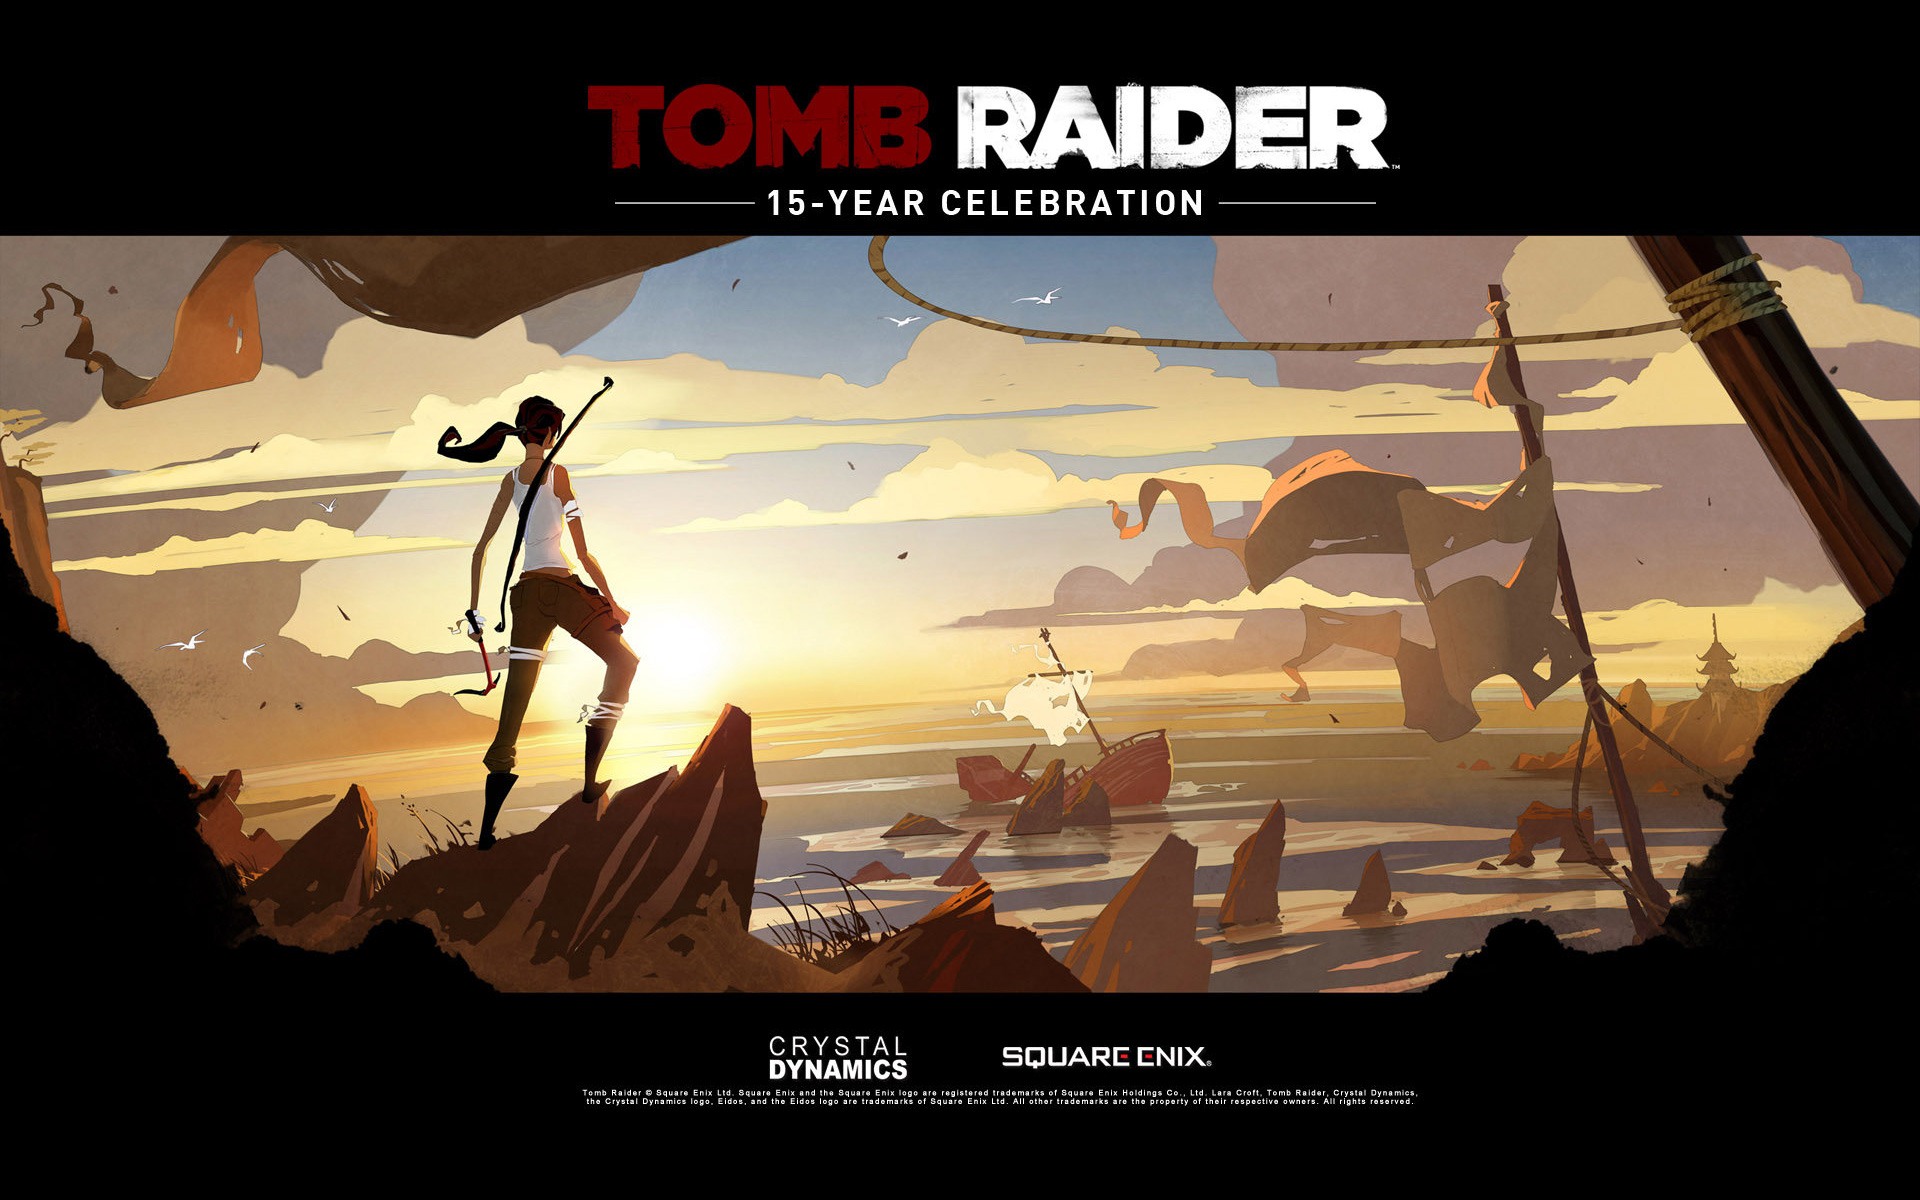 Tomb Raider 15-Year Celebration 古墓丽影15周年纪念版 高清壁纸13 - 1920x1200